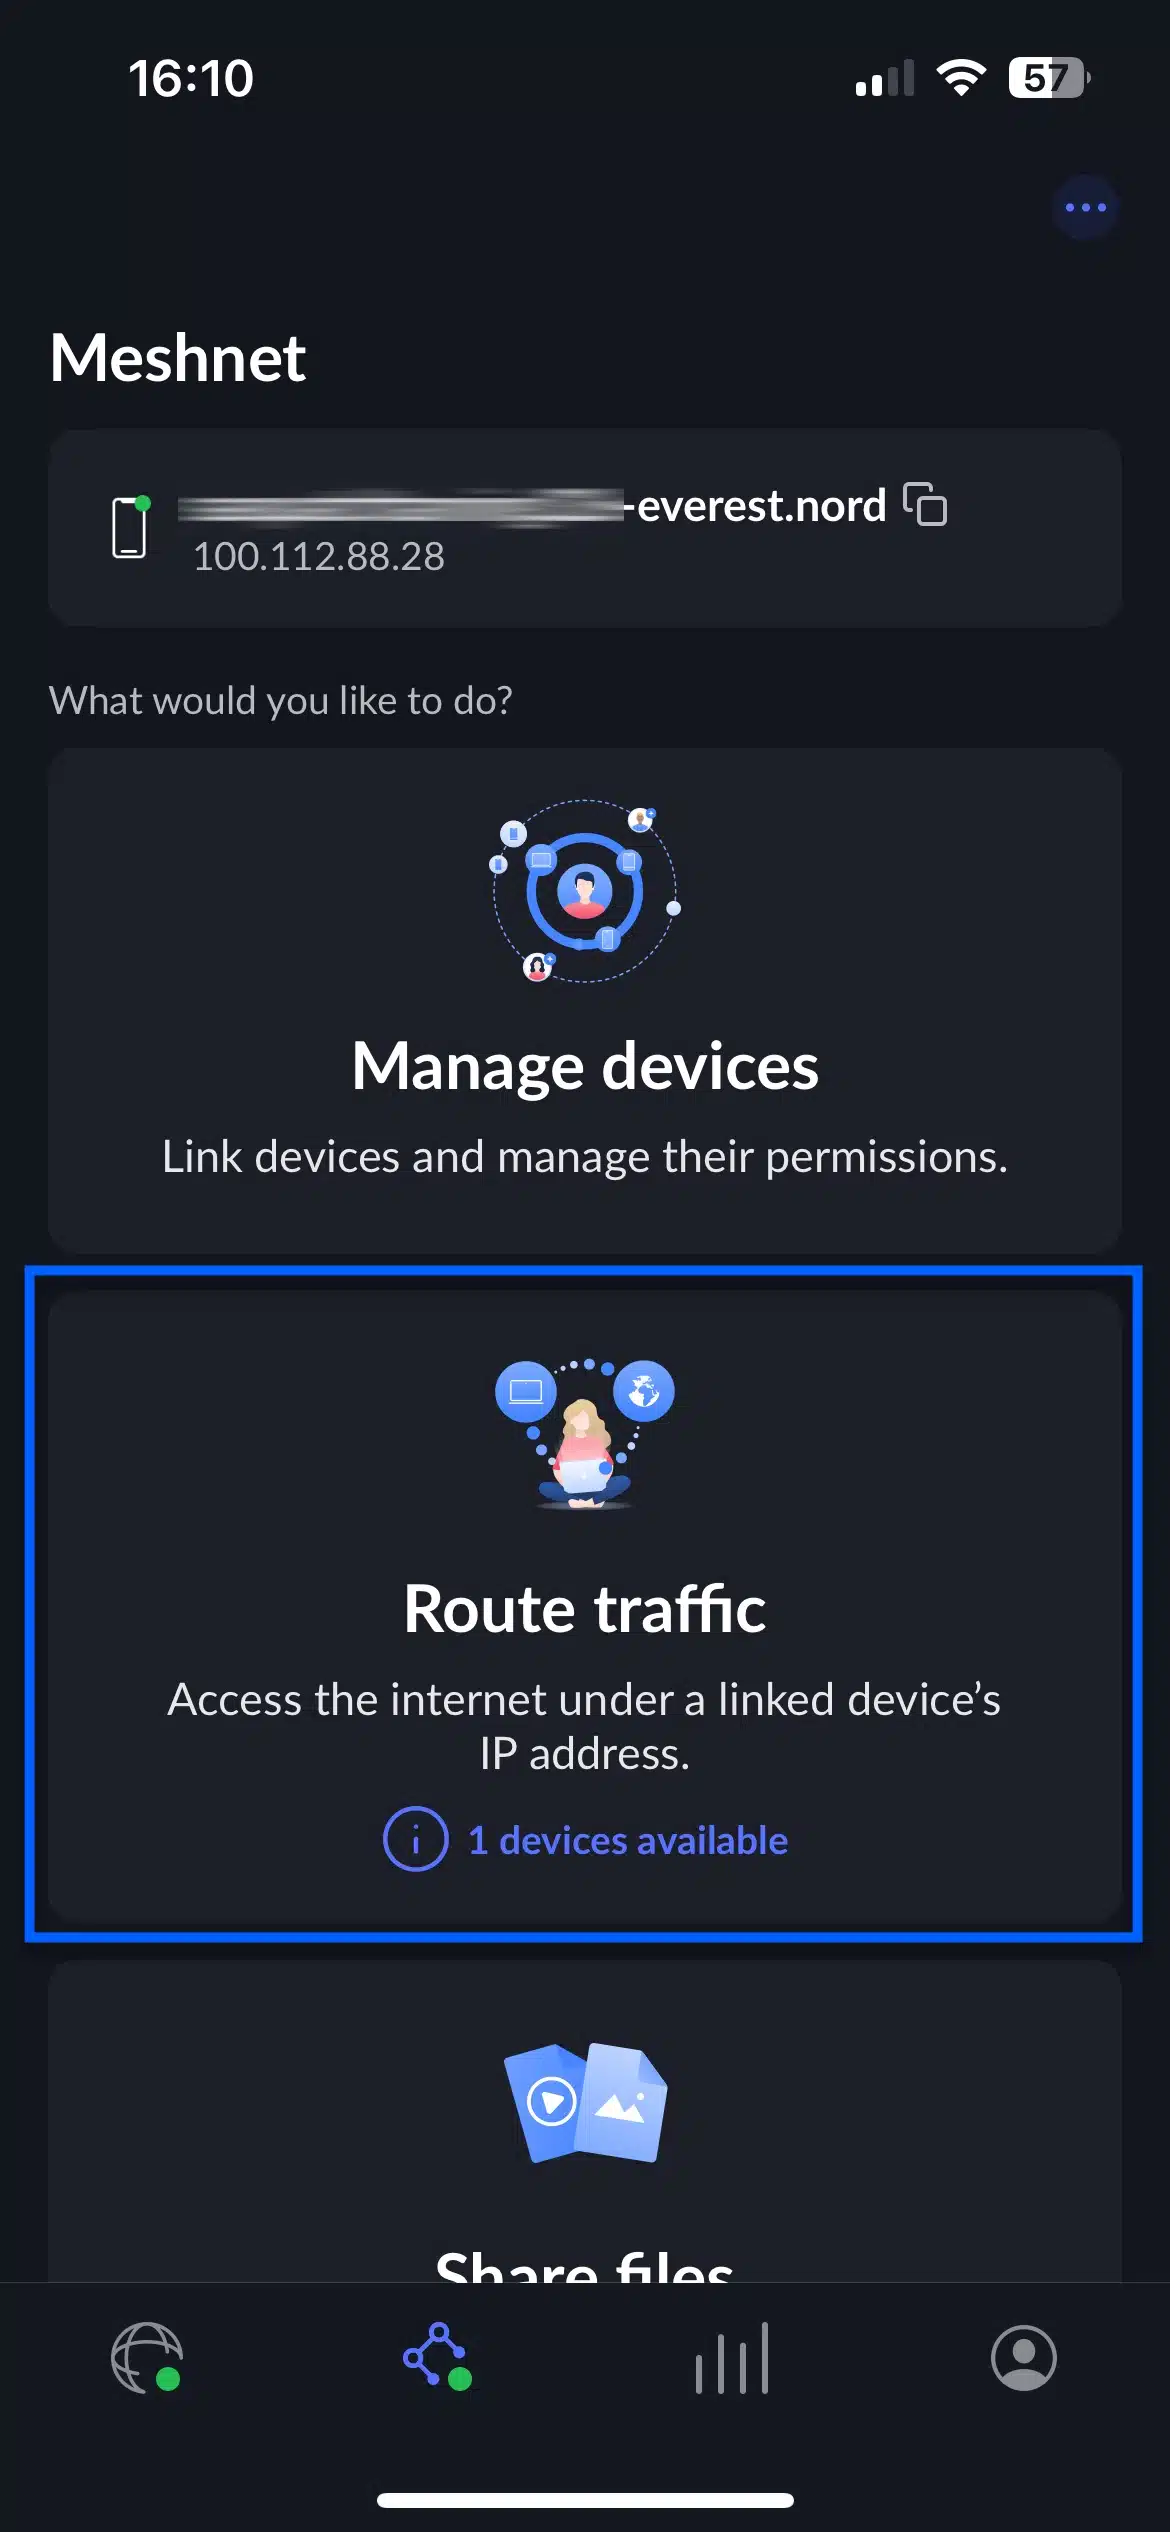 NordVPN Meshnet - Mobile - Select Route Traffic